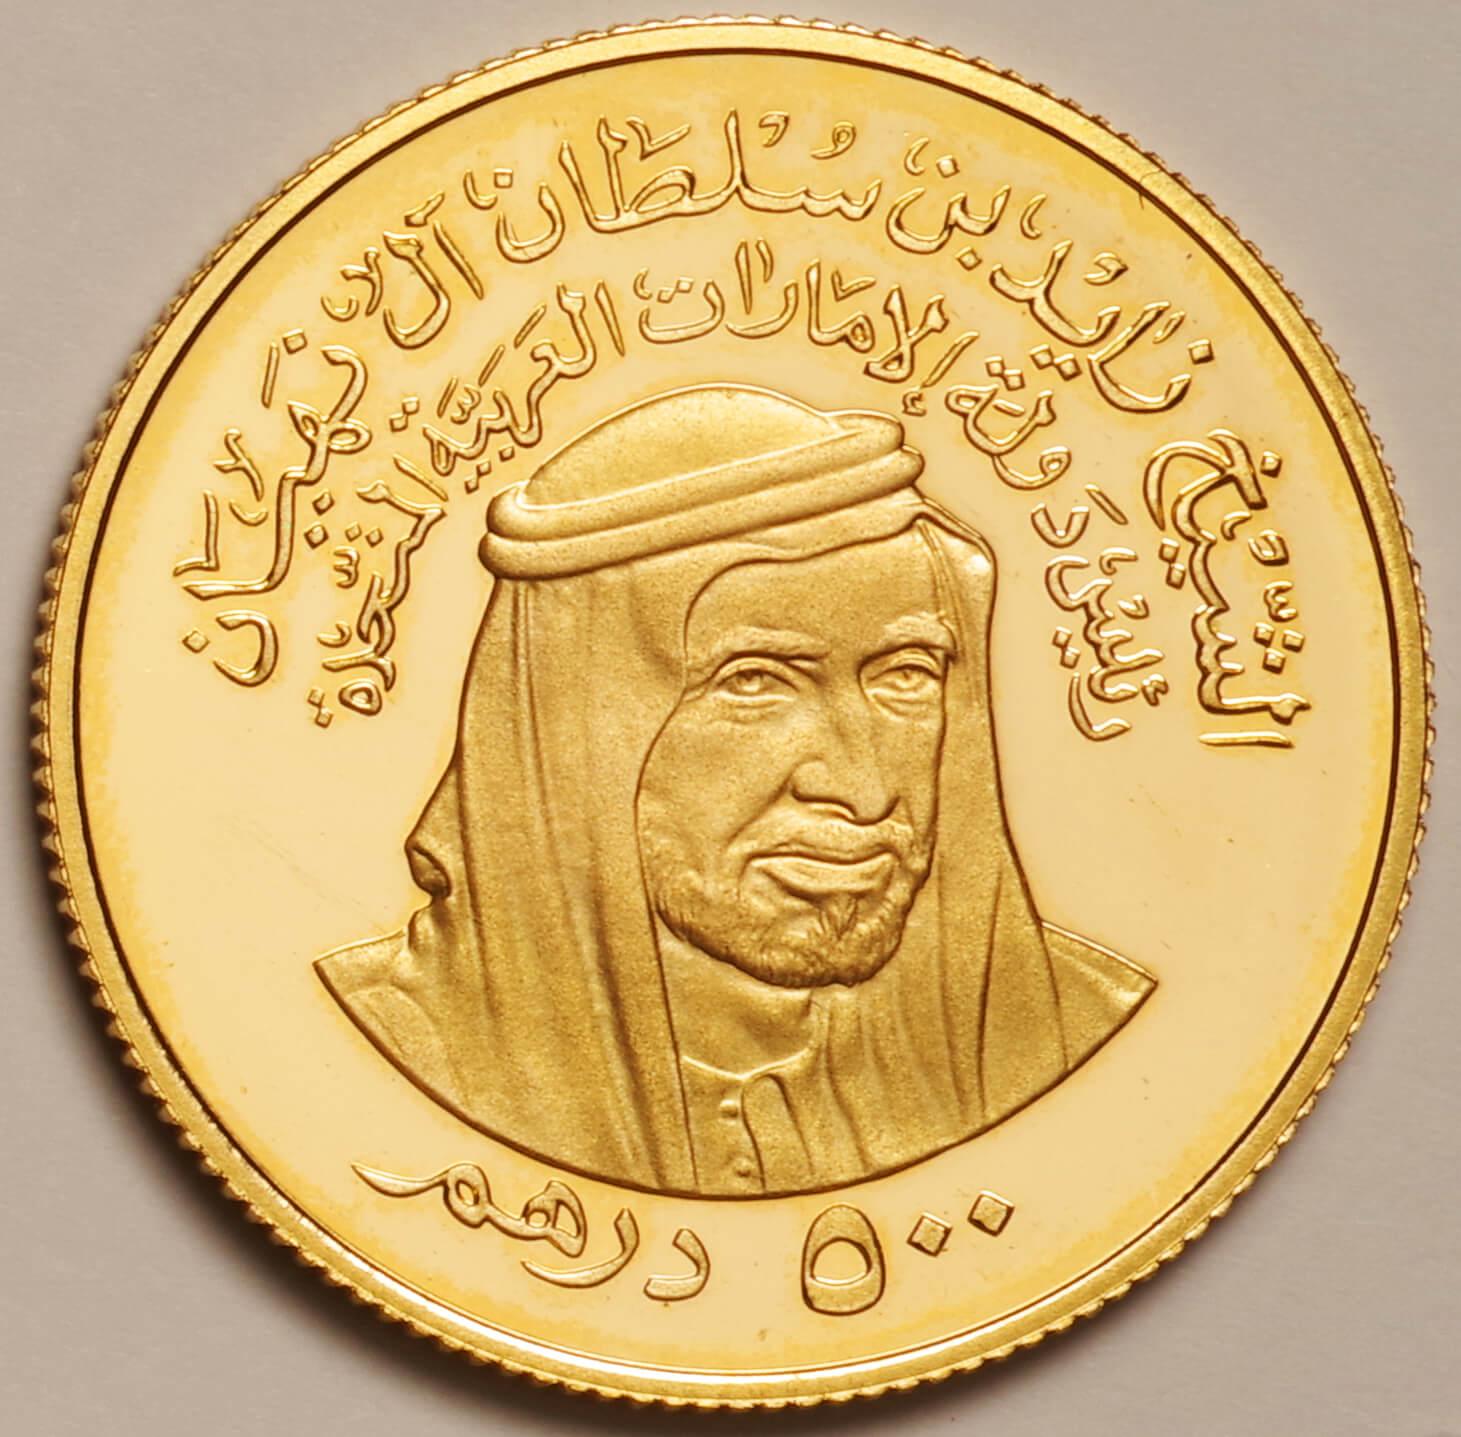 アラブ首長国連邦-UAE 首長国連邦5周年記念 500ディルハム金貨 1976年